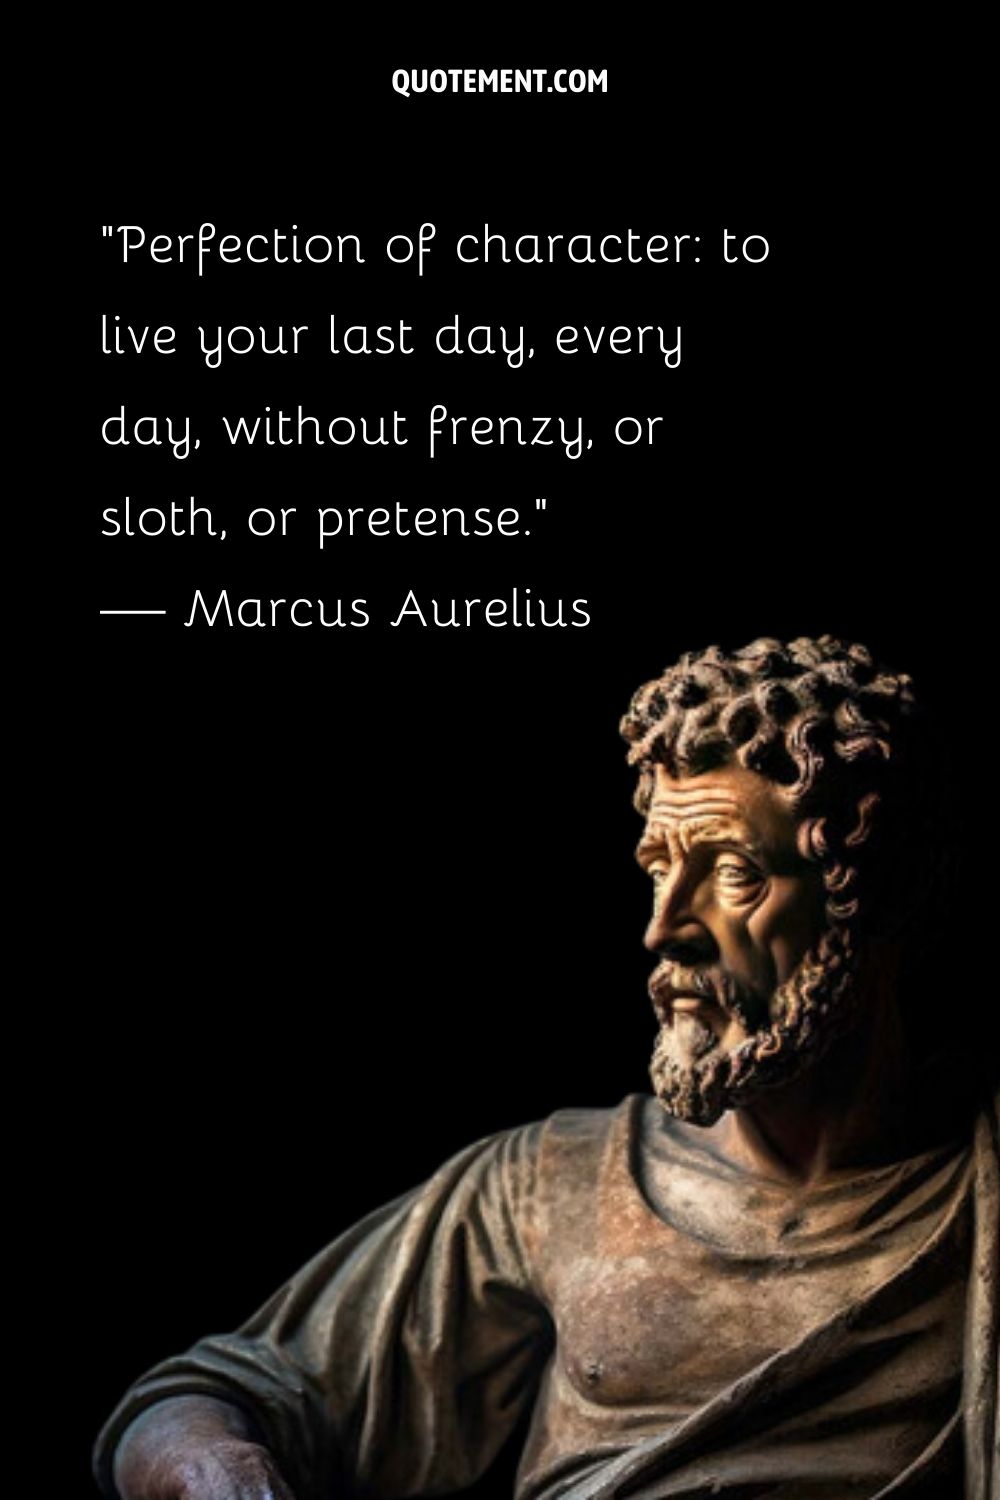 Ancient statue representing Marcus Aurelius famous quote.